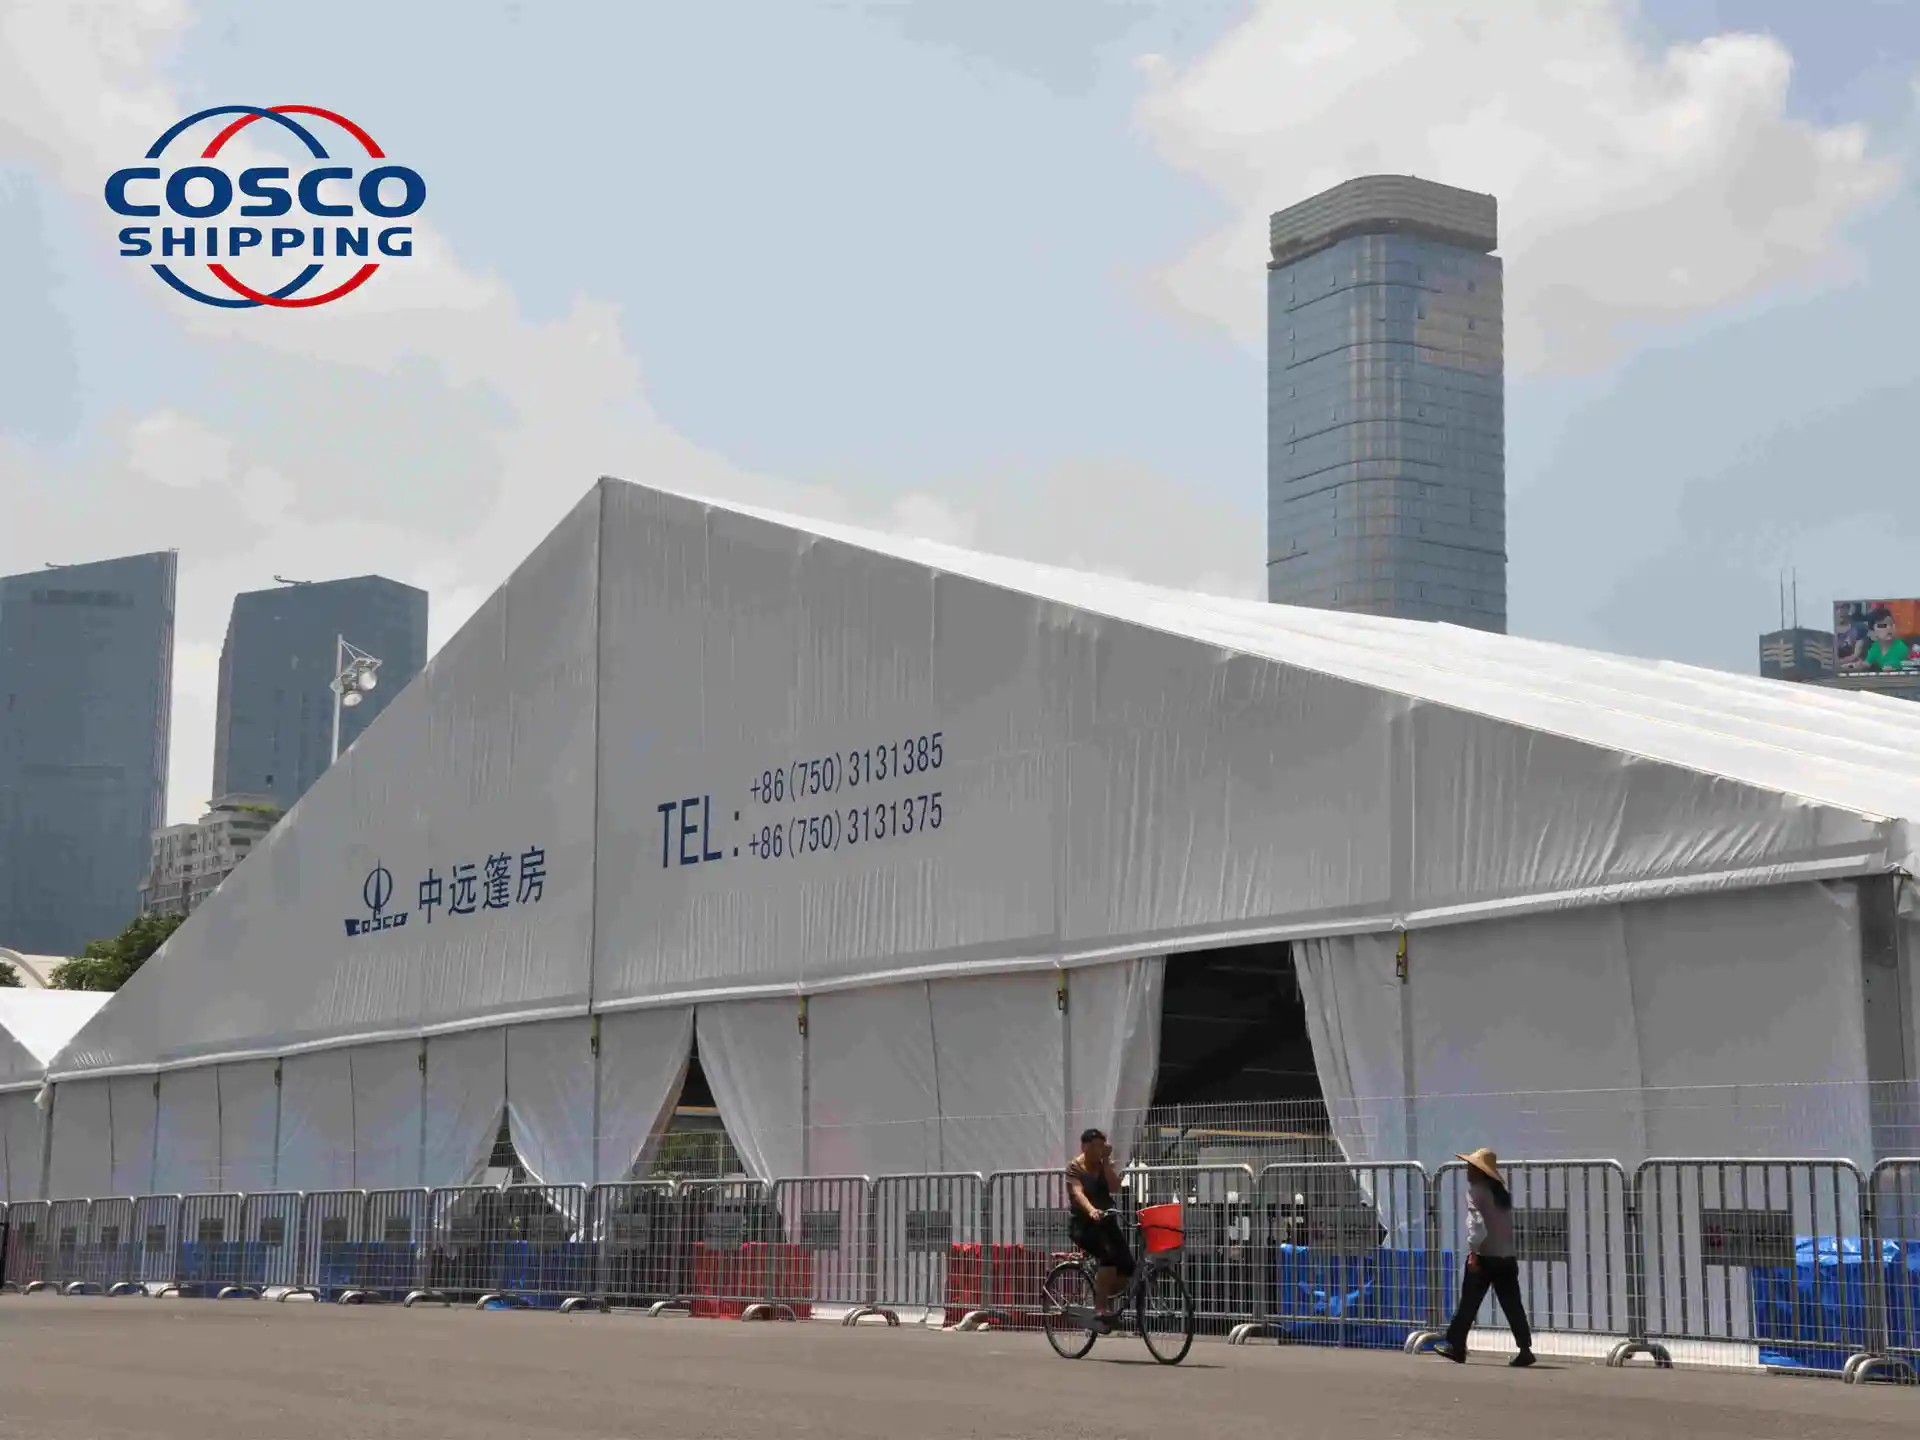 Aluminium Structure Big Event Tent 40x60m  for Sale